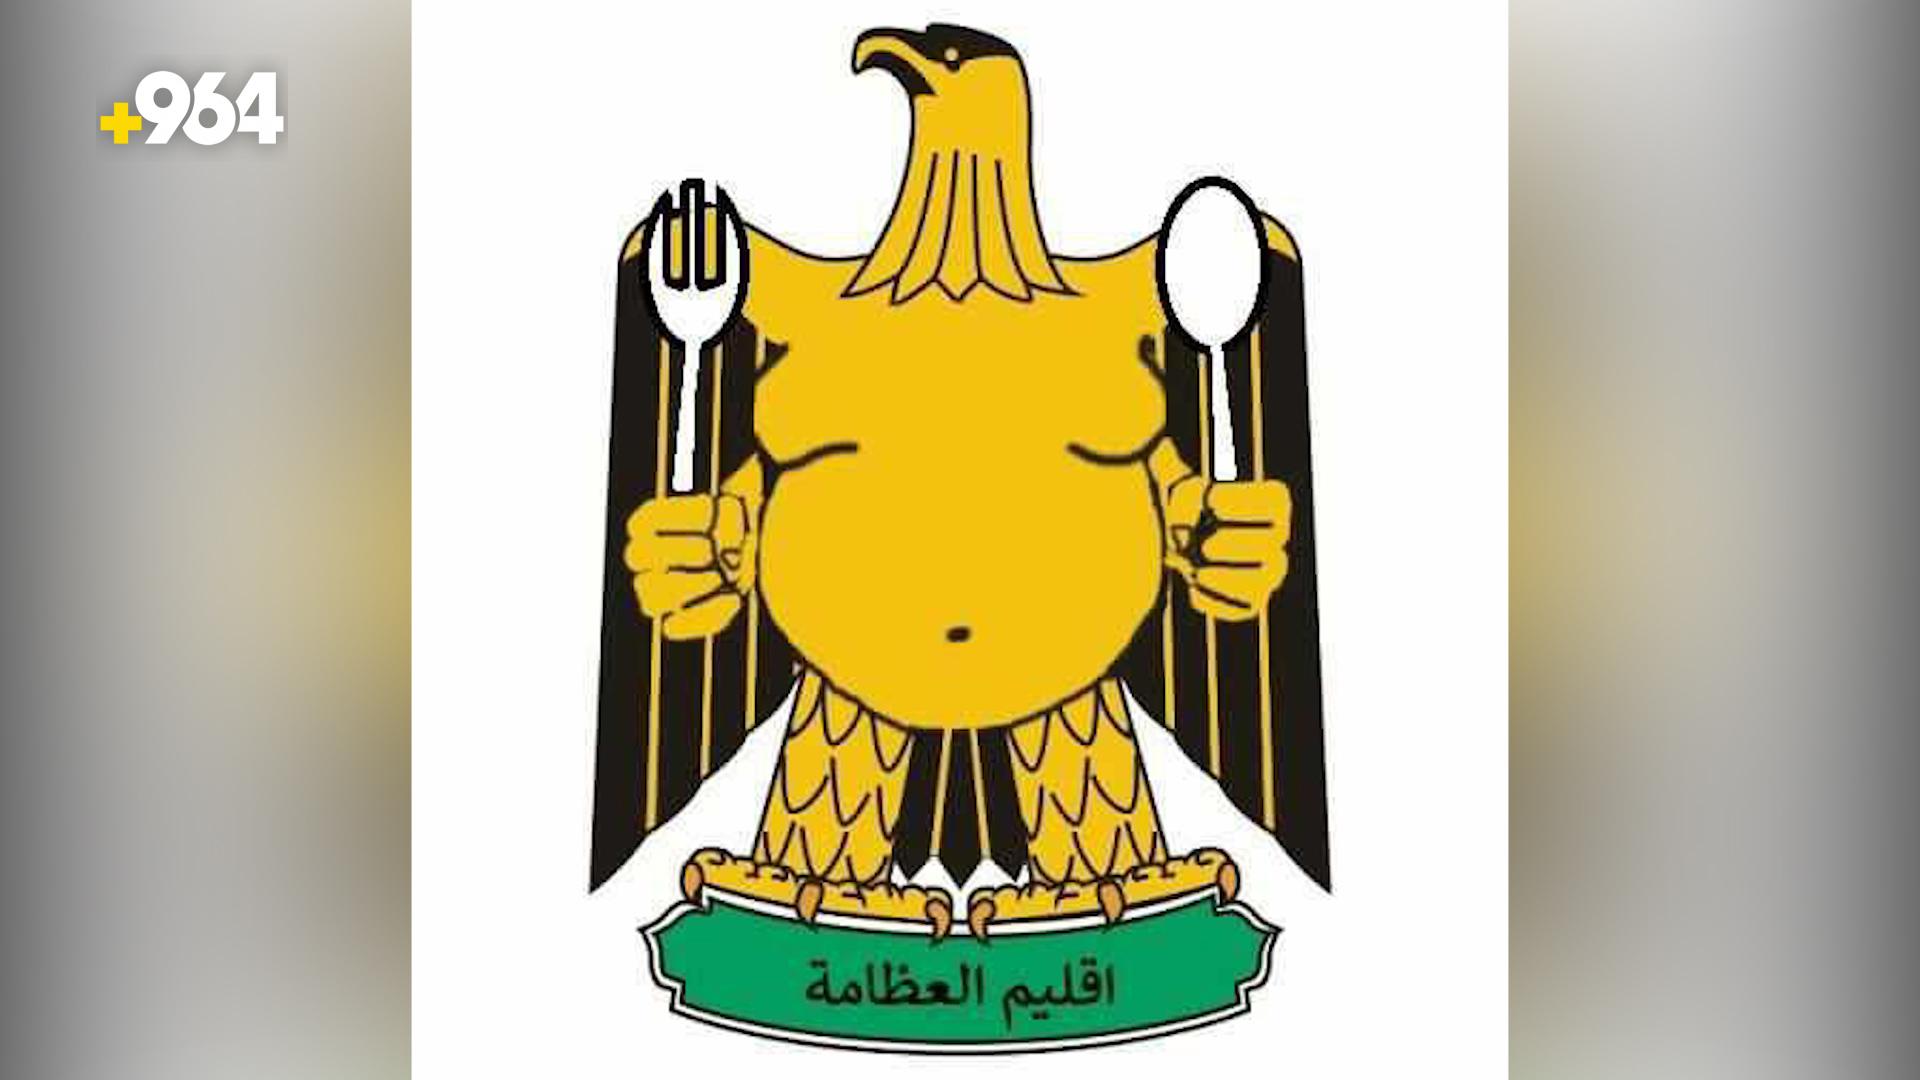 عظامة العراق: الريجيم عدونا الأول ولا نخطط لمكافحة الكرش لكن فيسبوك يكره الأكل